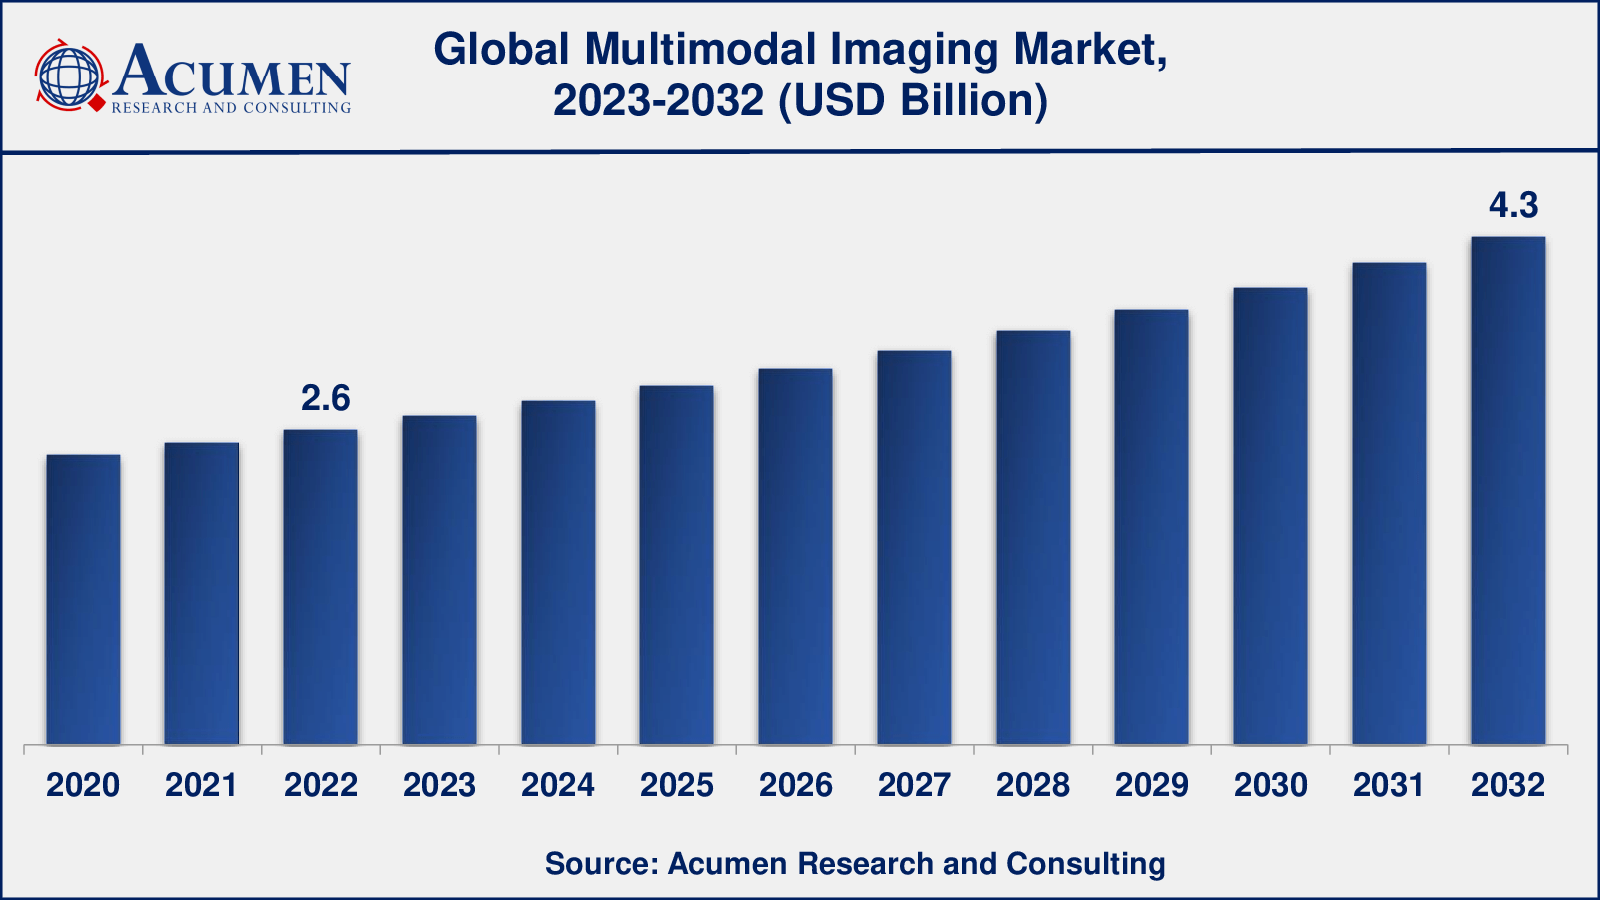 Multimodal Imaging Market Analysis Period